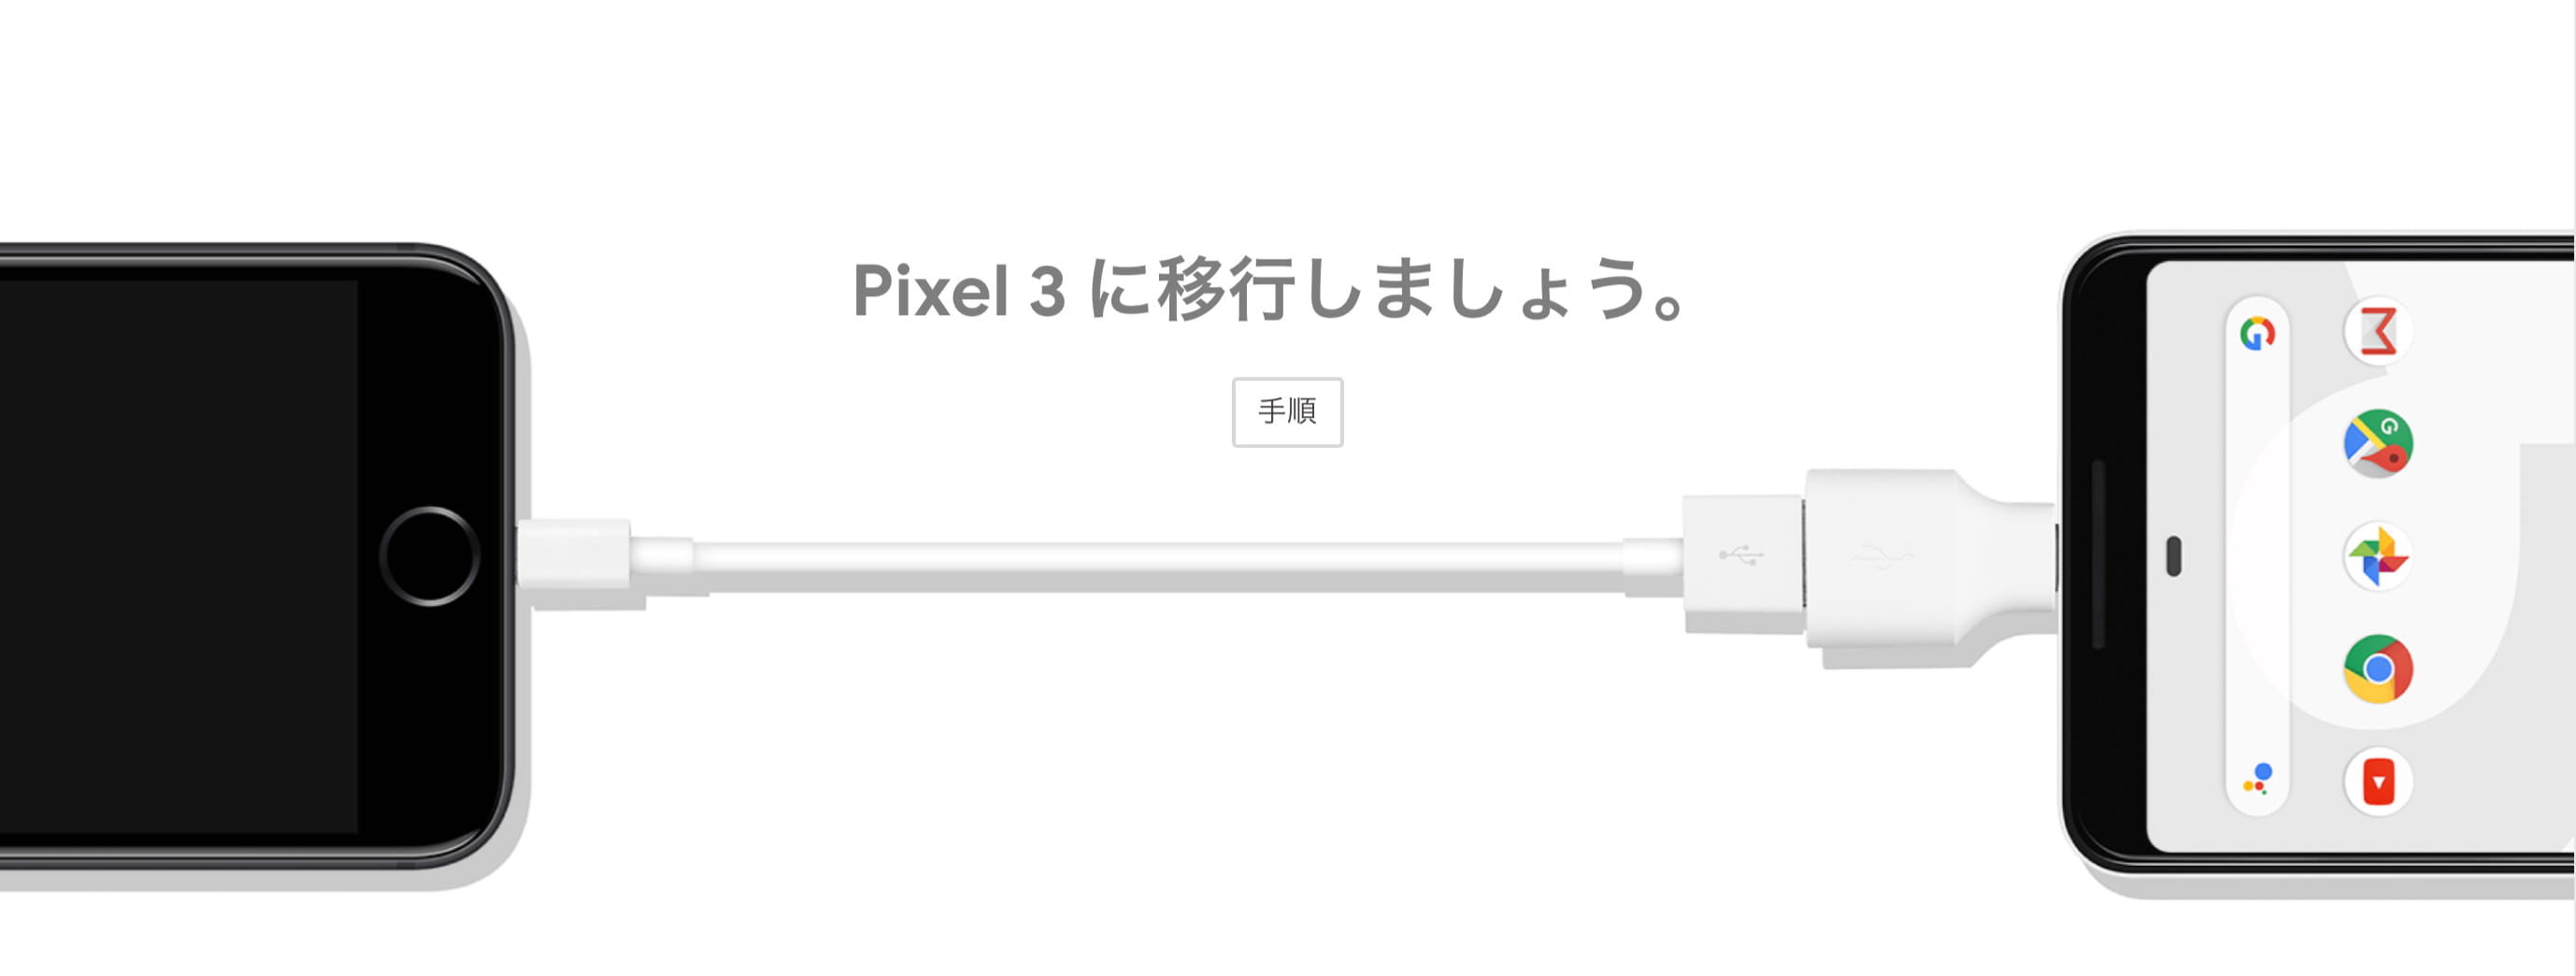 Pixel 3 に移行いましょう。